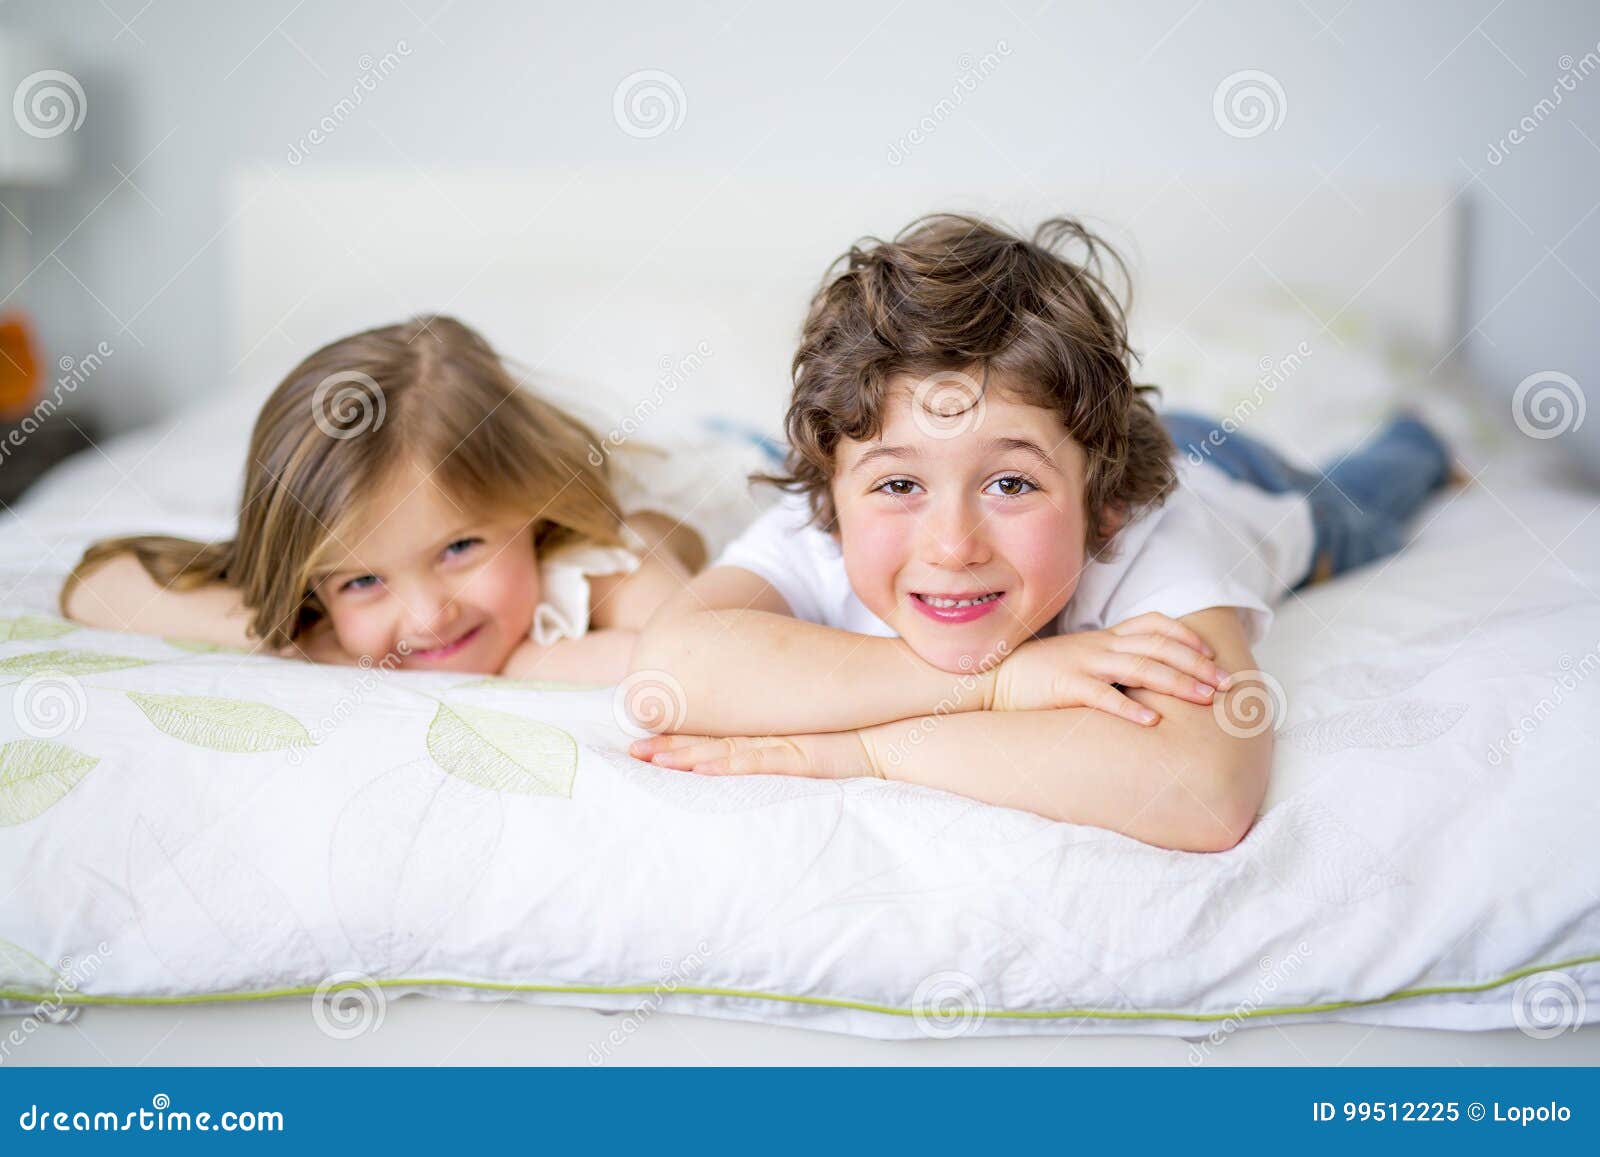 Пришел к сестре в постель. Брат и сестра в кровати. Брат и сестренка в постели. С младшим братом в постельке. Сестры в пижамах кровать.